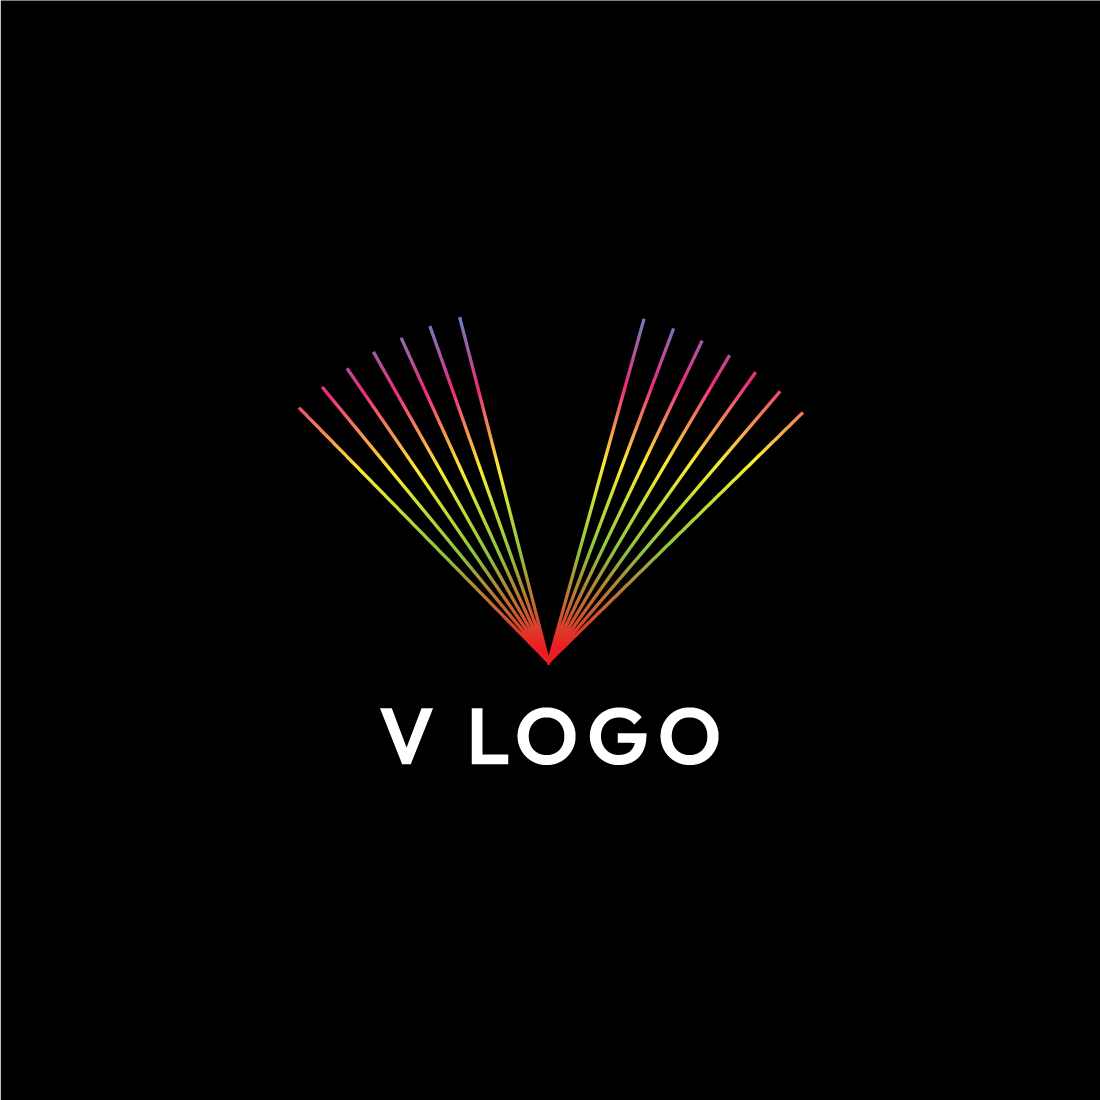 Sleek Line Art Letter V Logo Design - Professional Branding Solution cover image.